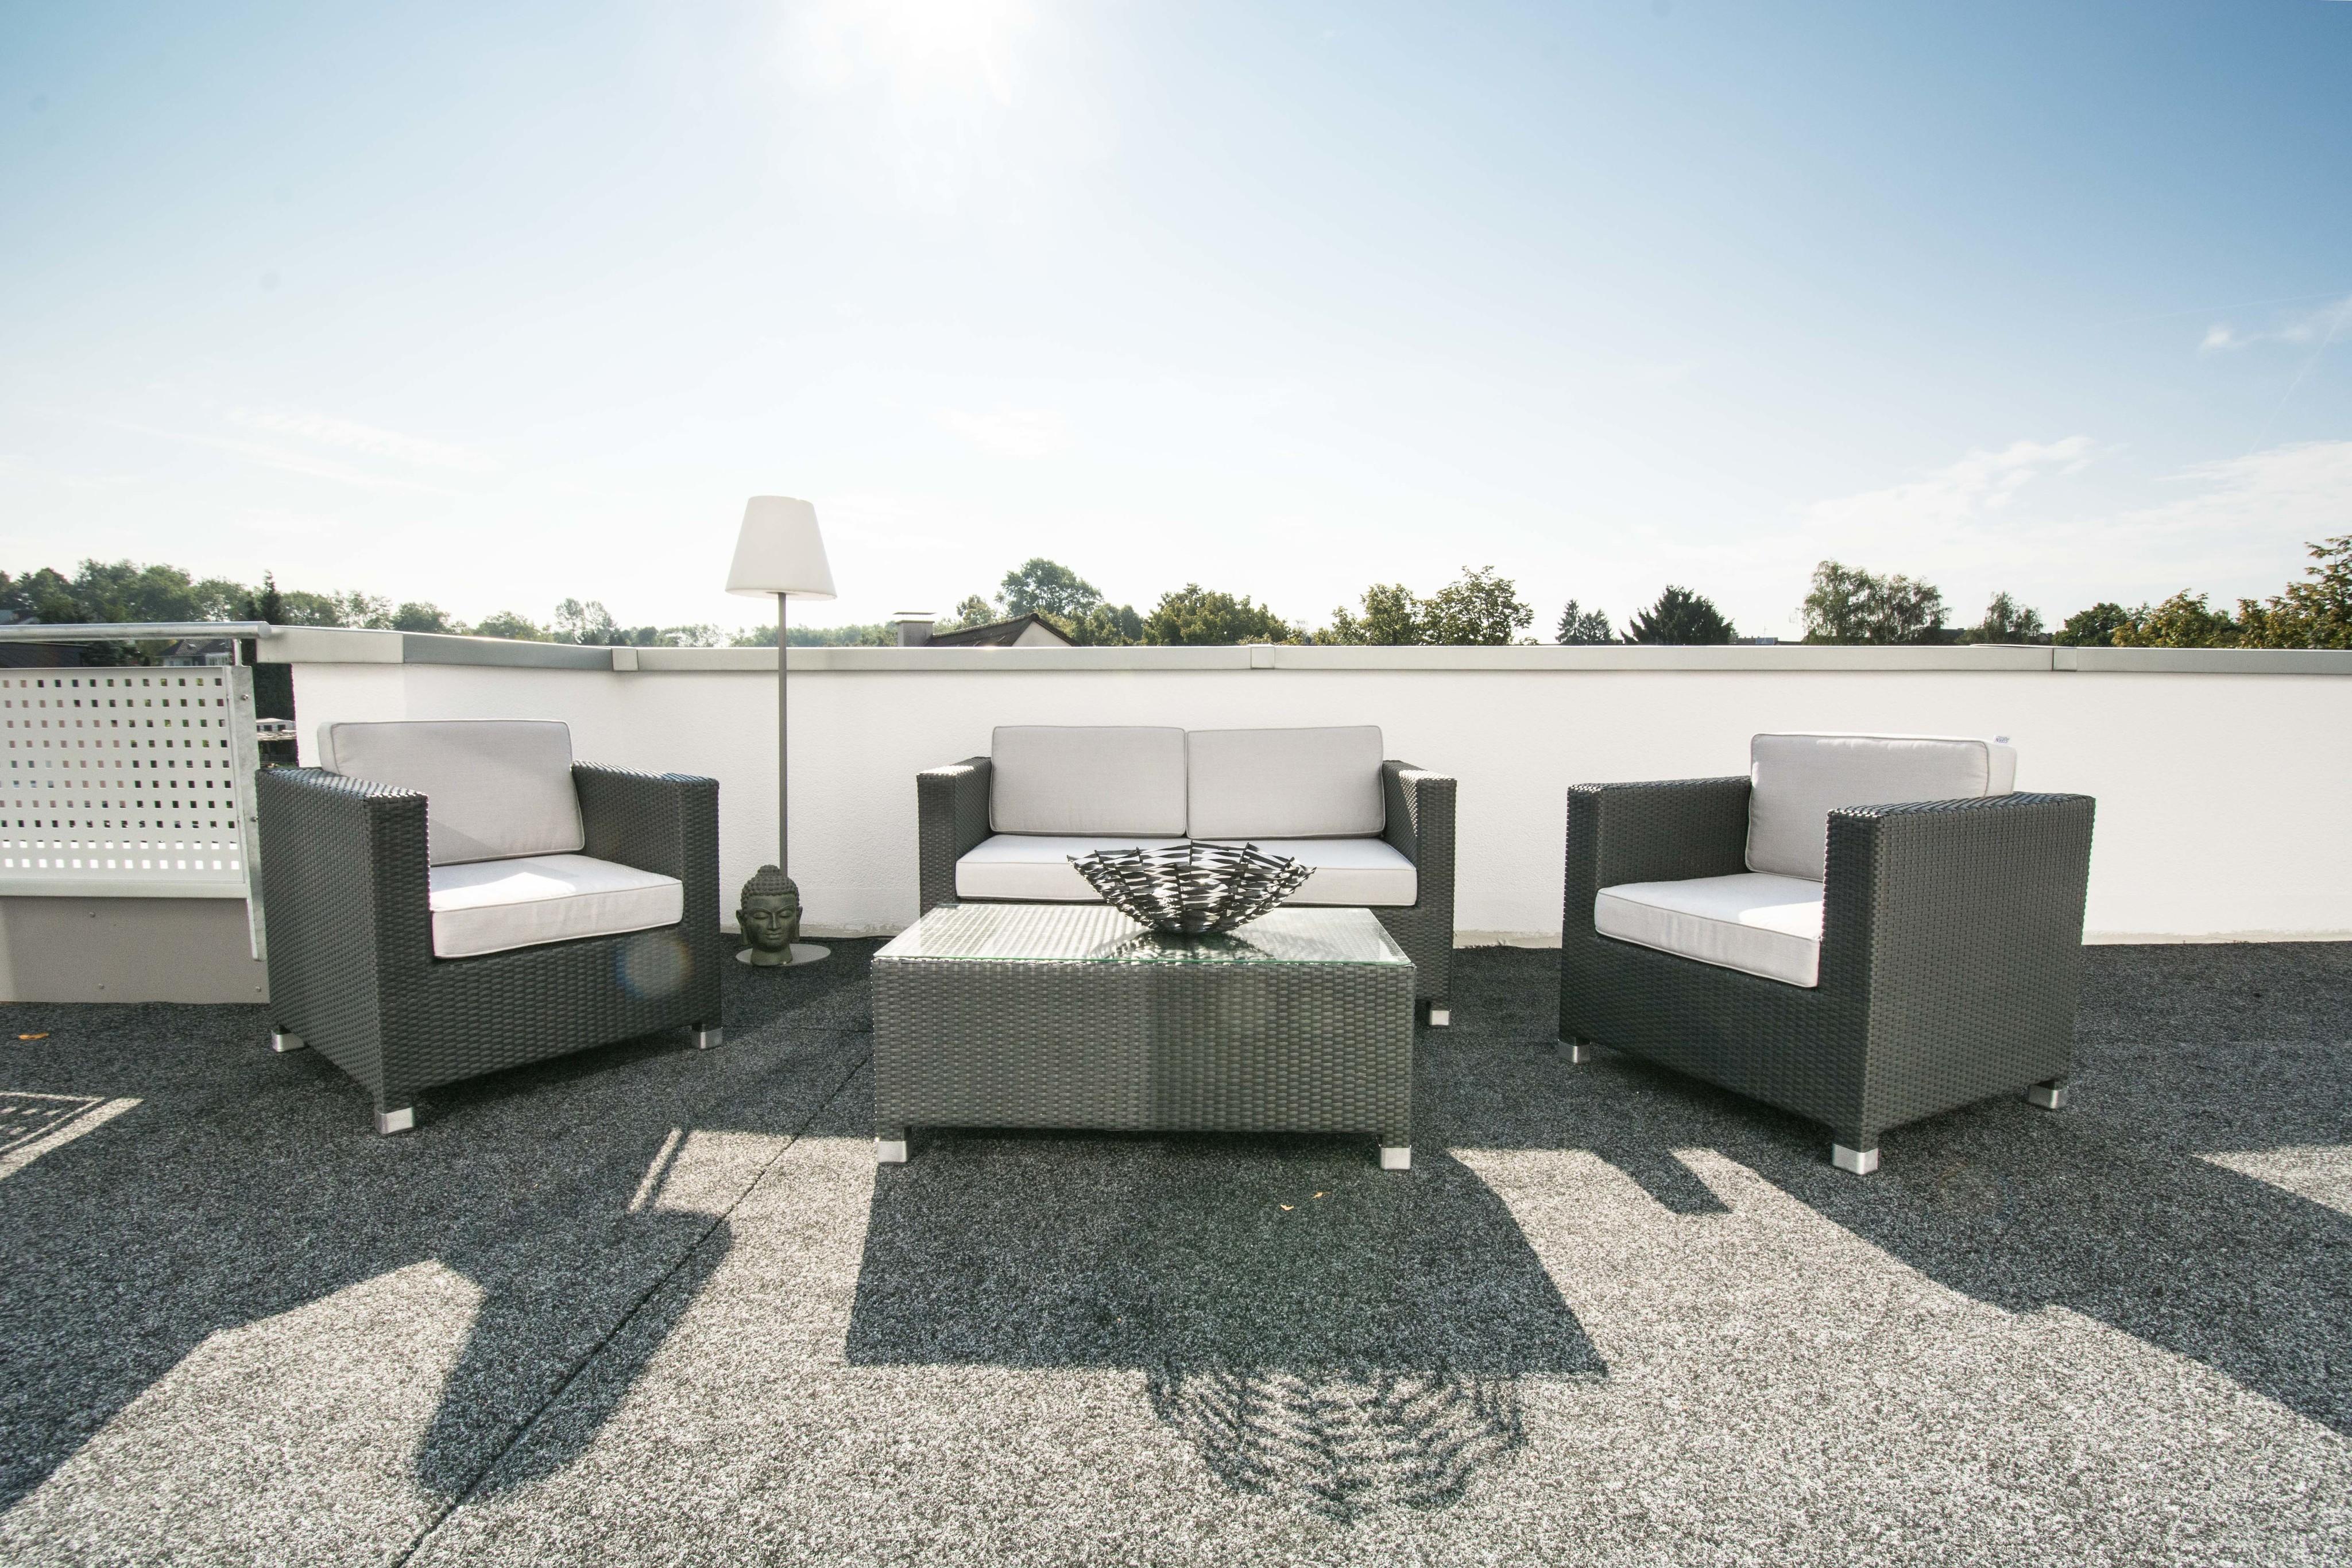 Terrasse Lounge #korbsessel #korbtisch #terrassenmöbel ©www.Lunahomestaging.de